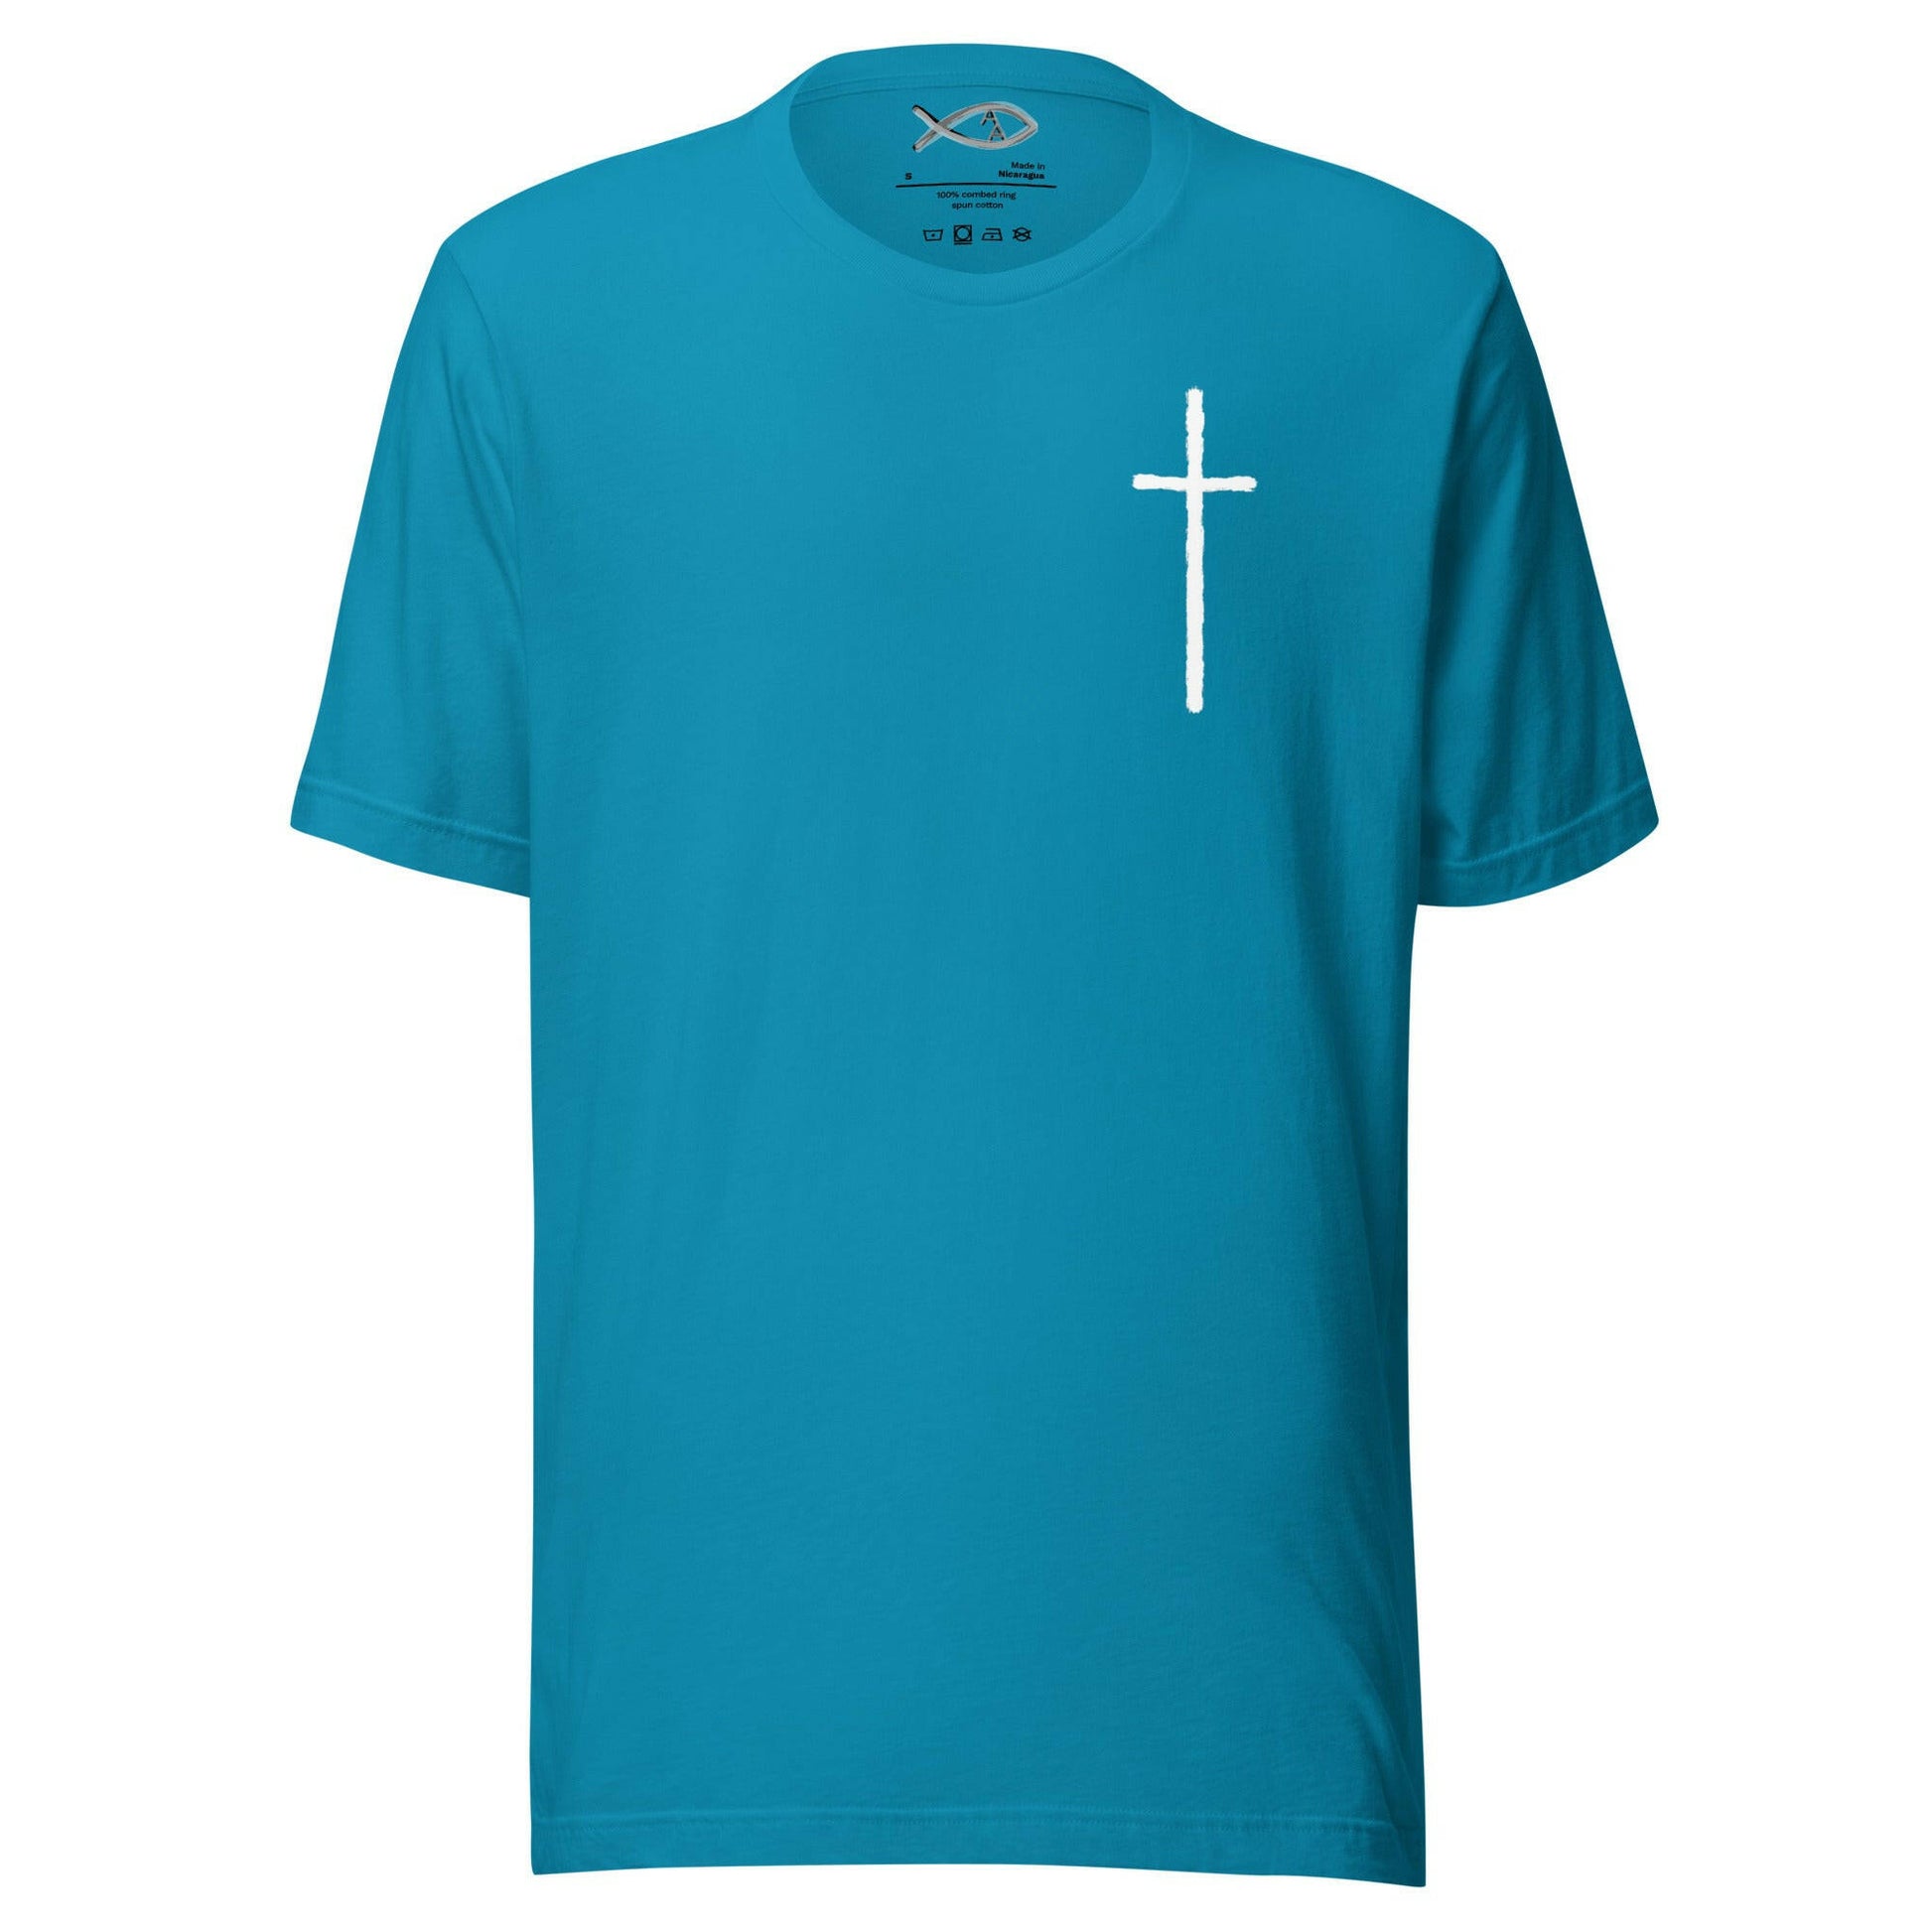 Hebrews 11:1 - Unisex T-Shirt (Faith) - Almighty Apparel 